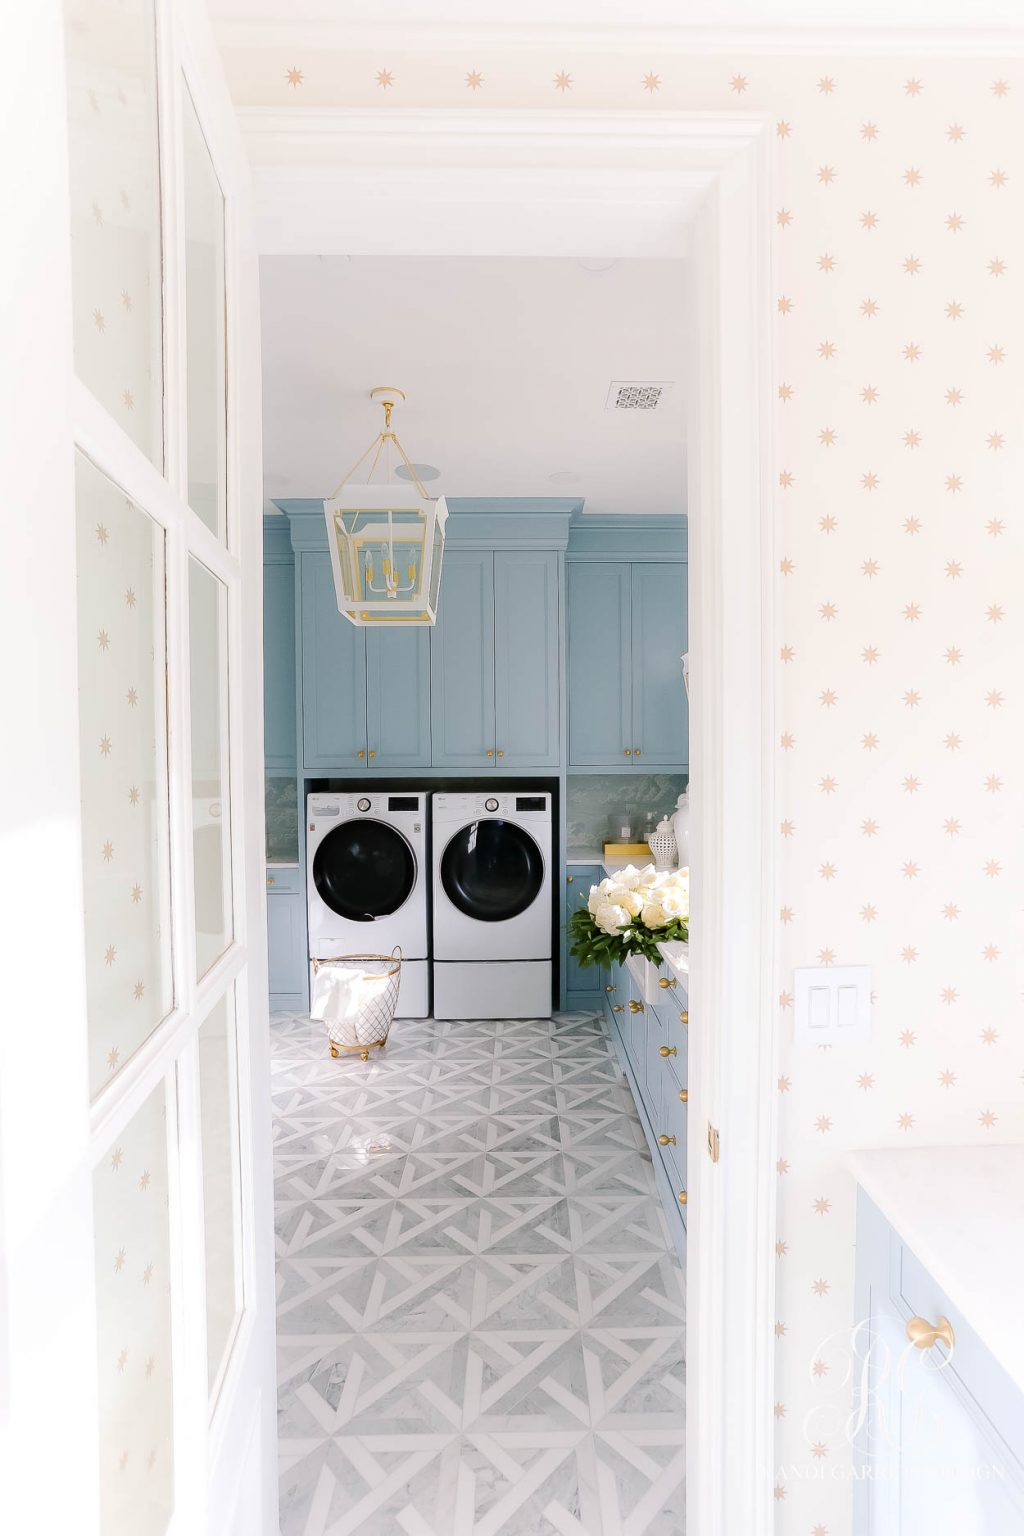 The Wren's Laundry Room Reveal - Randi Garrett Design